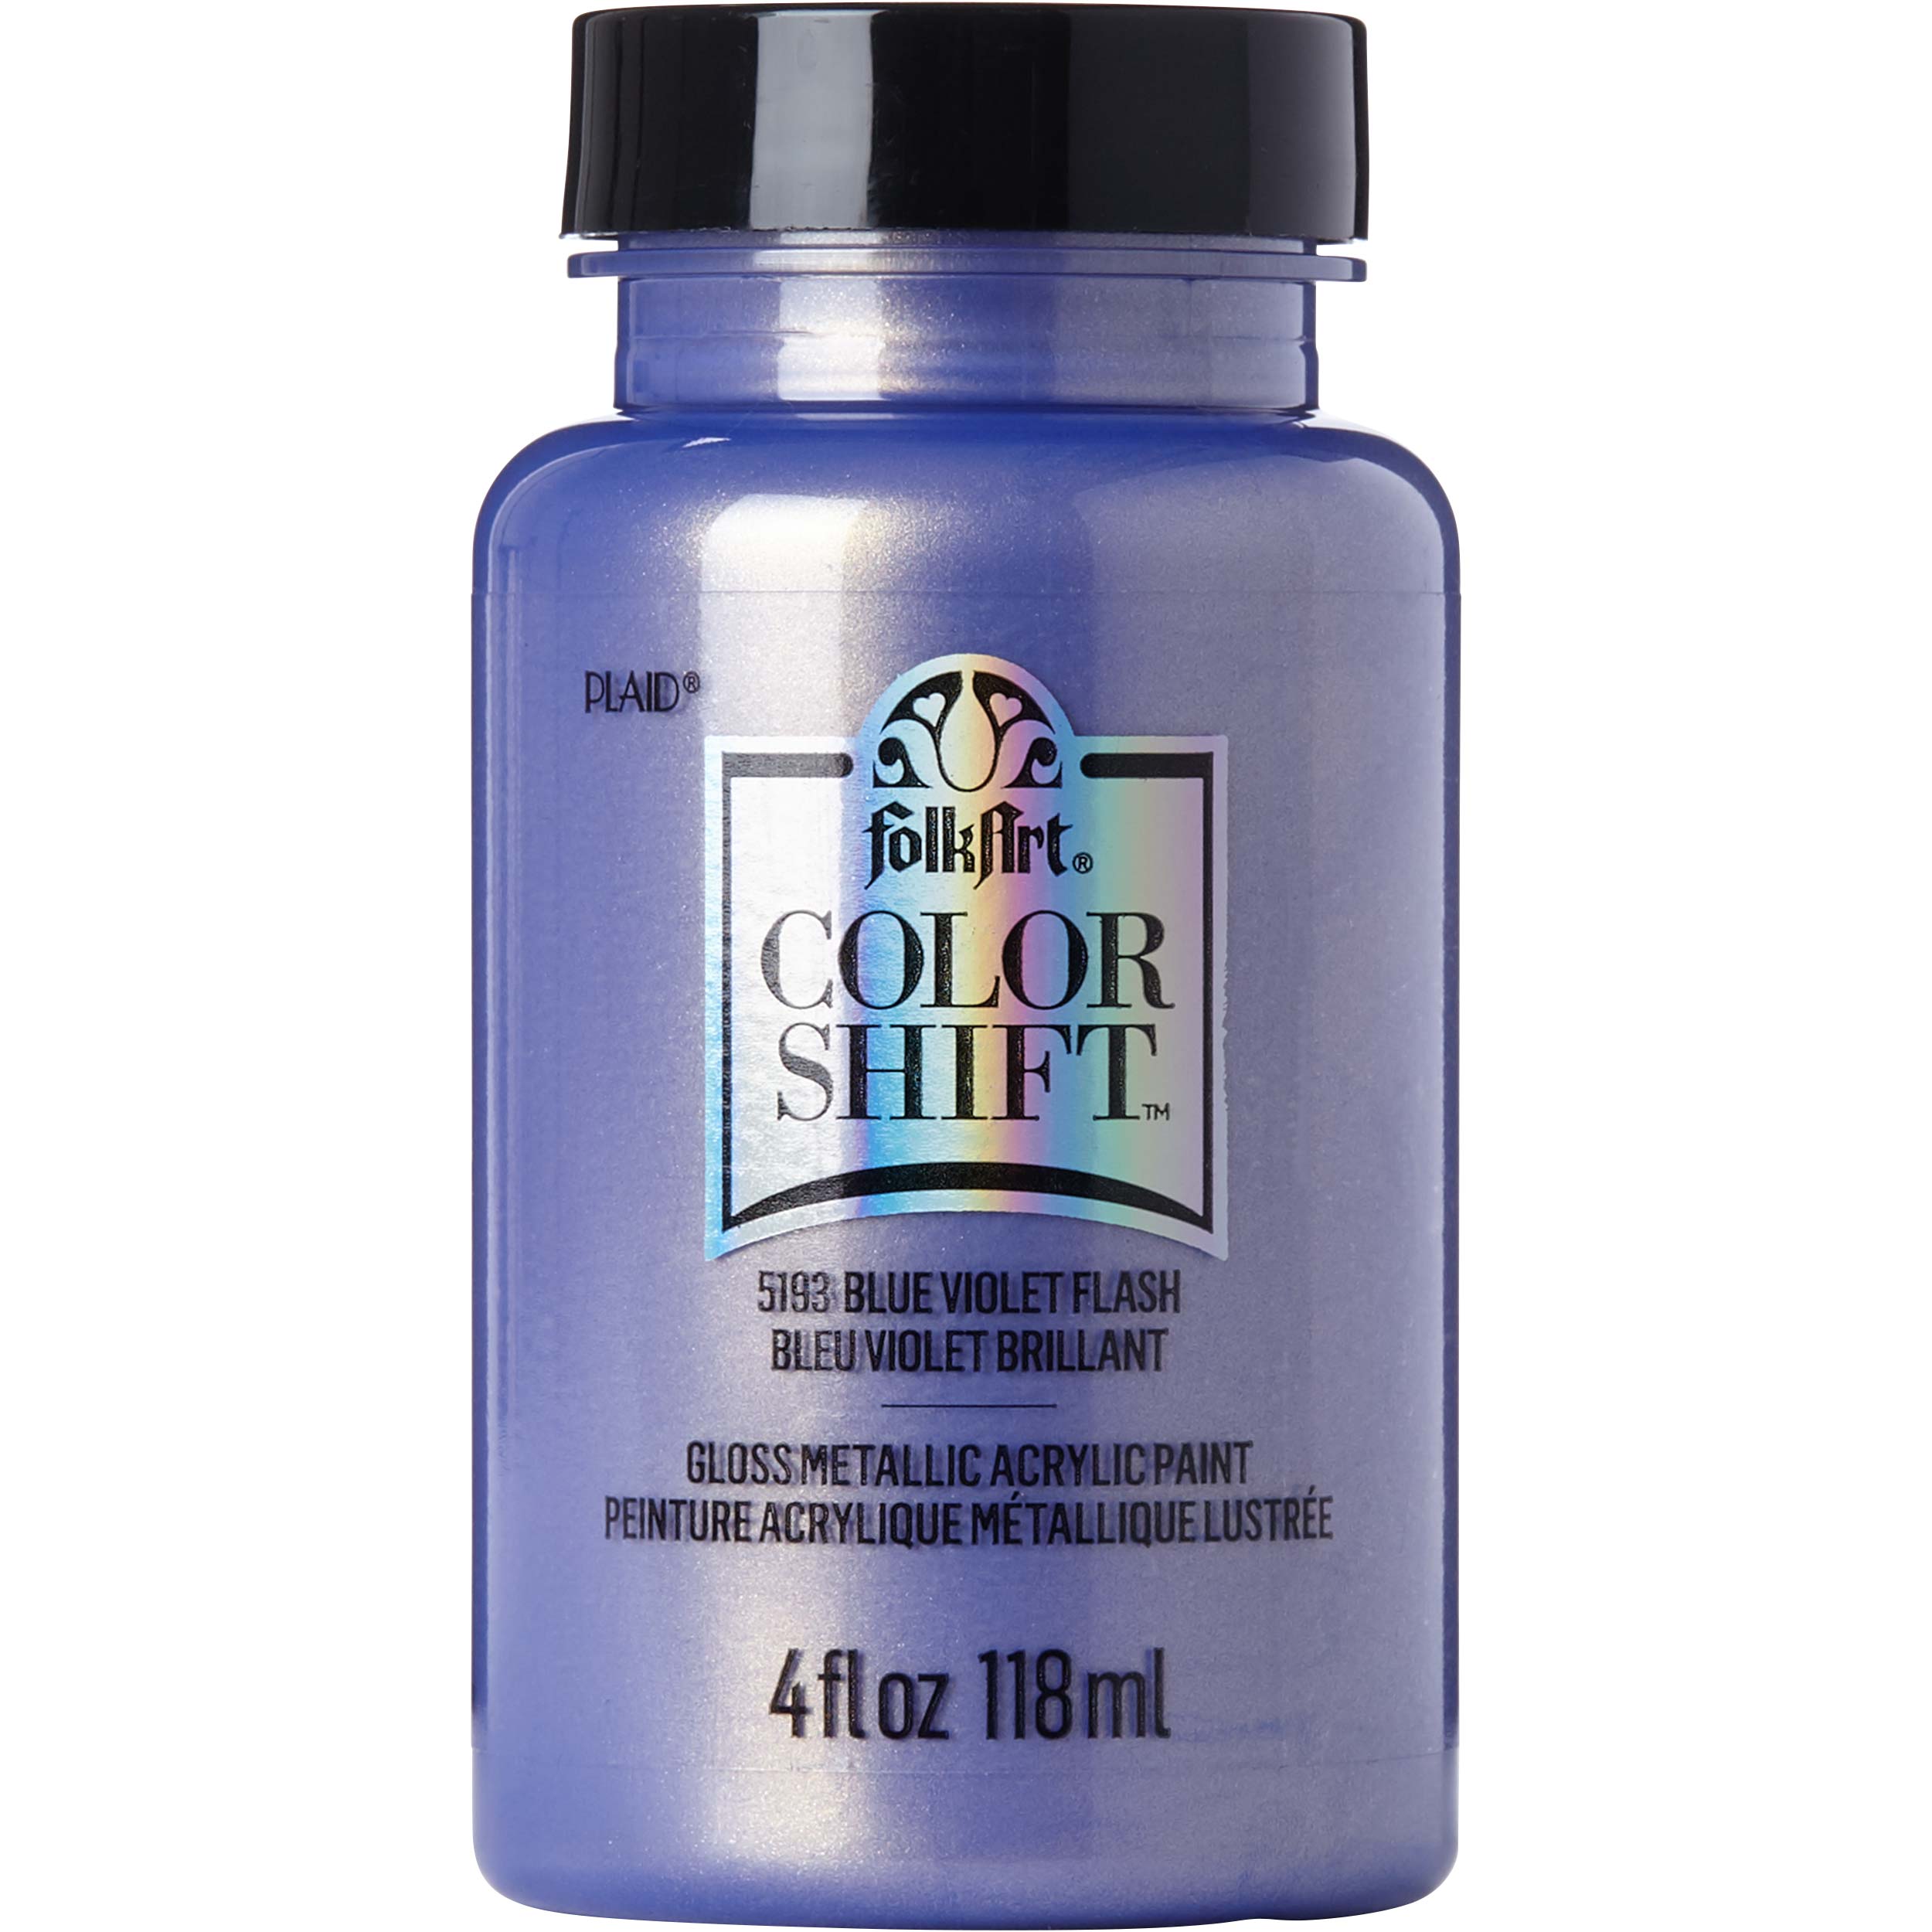 FolkArt ® Color Shift™ Acrylic Paint - Blue Violet Flash, 4 oz. - 5193